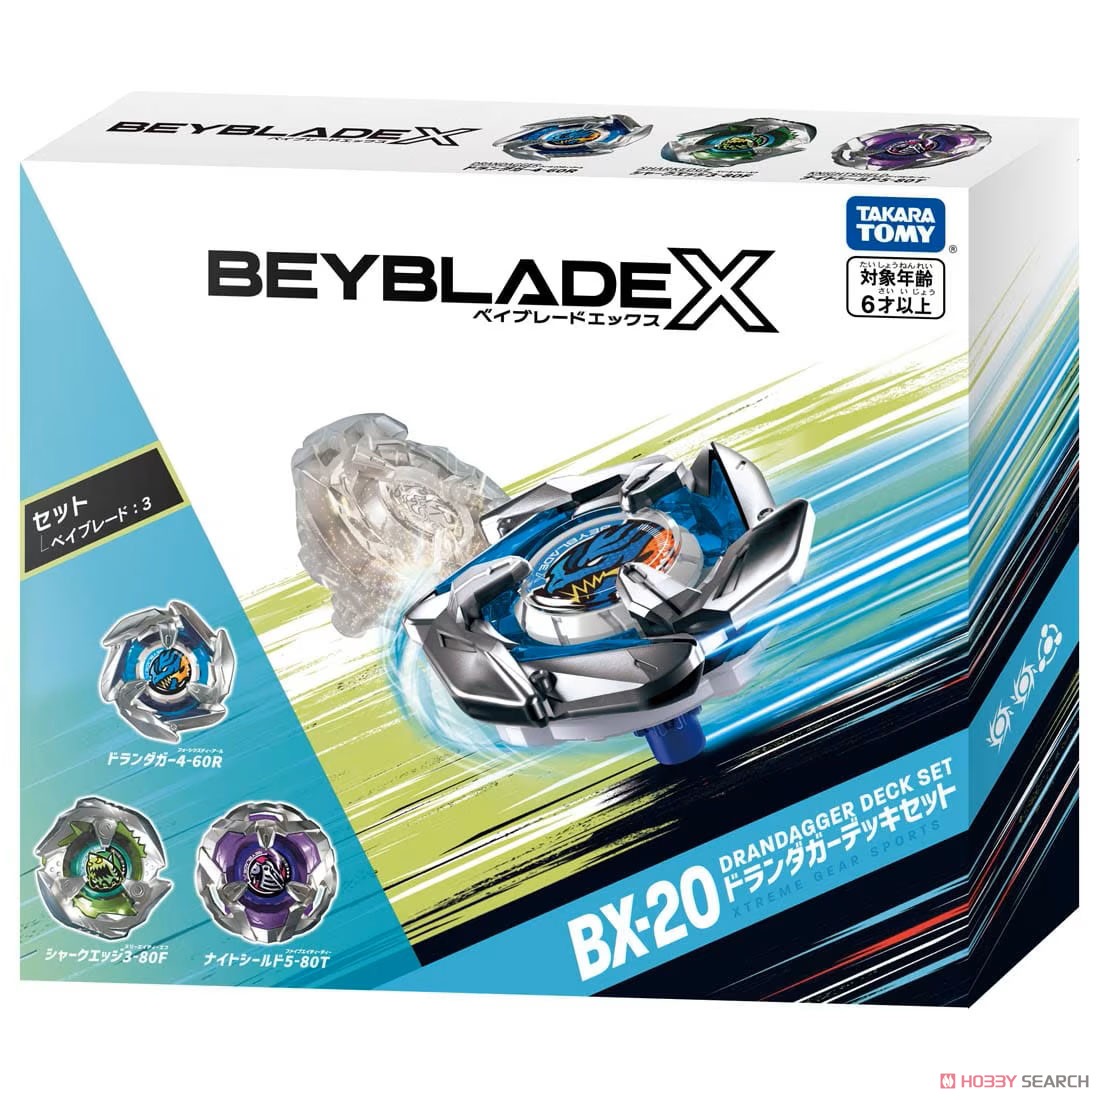 BEYBLADE X BX-20 ドランダガーデッキセット (スポーツ玩具) パッケージ1